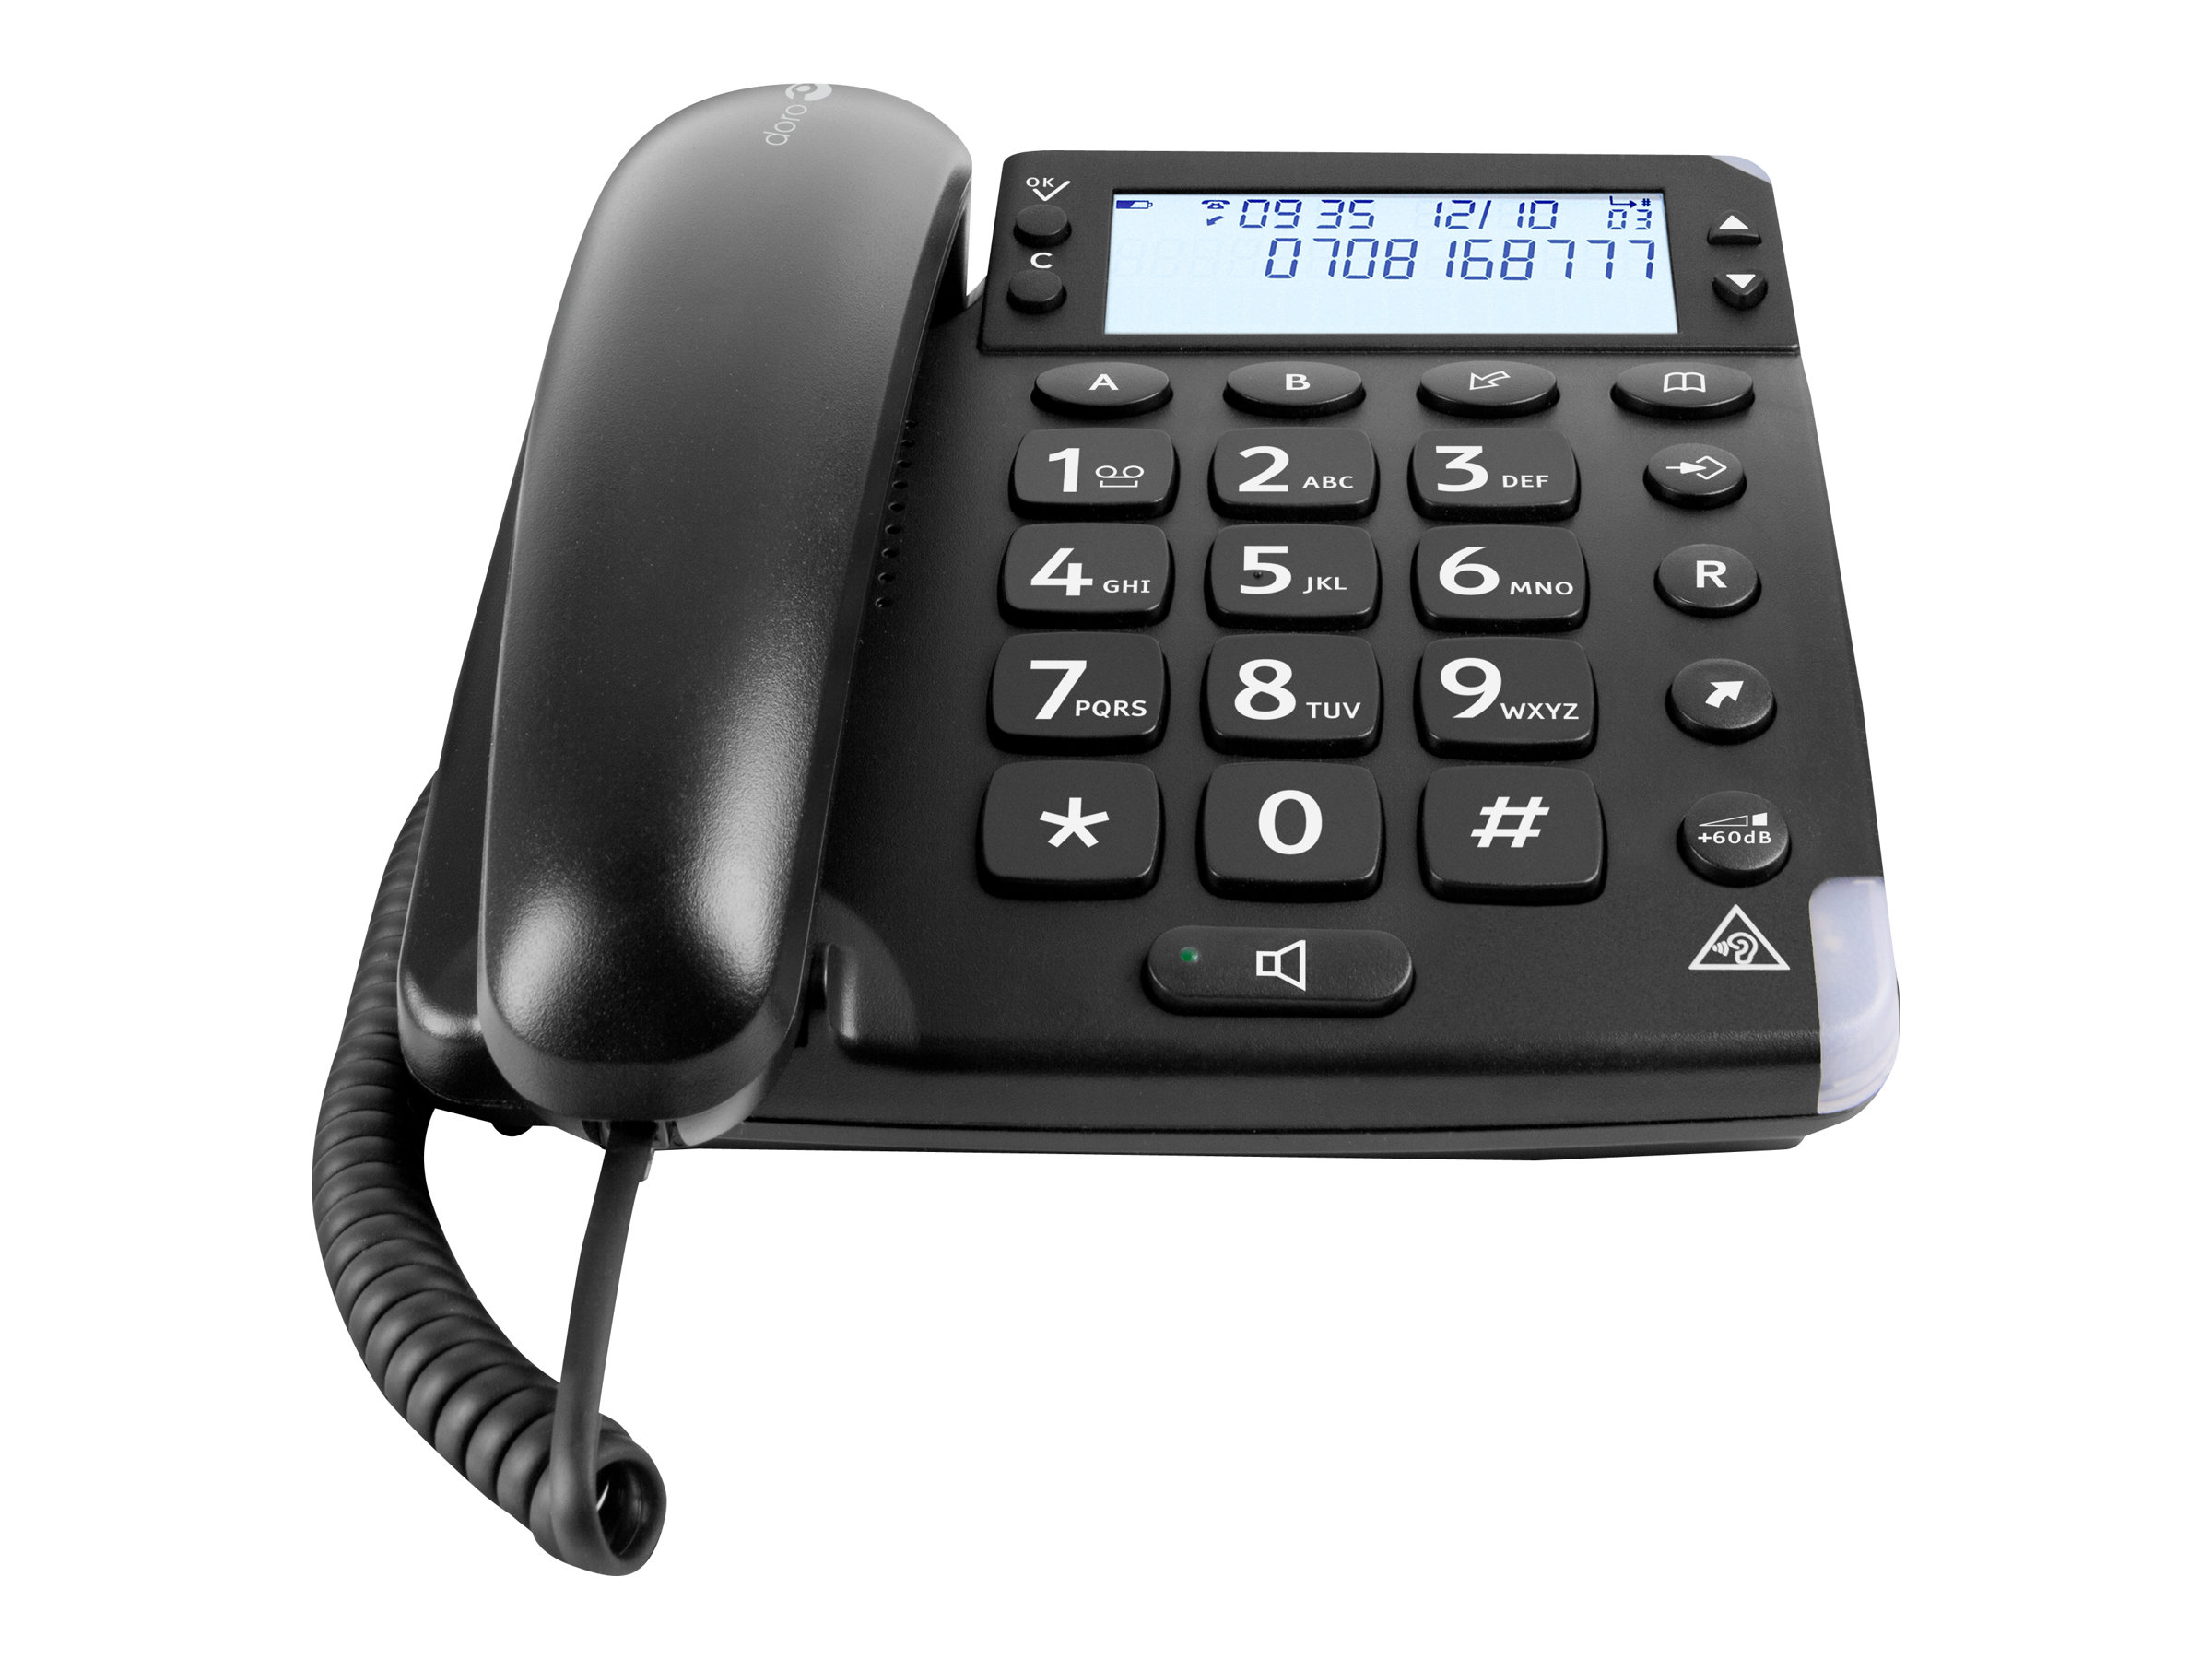 Doro Magna 4000 - Telefon mit Schnur mit Rufnummernanzeige/Anklopffunktion